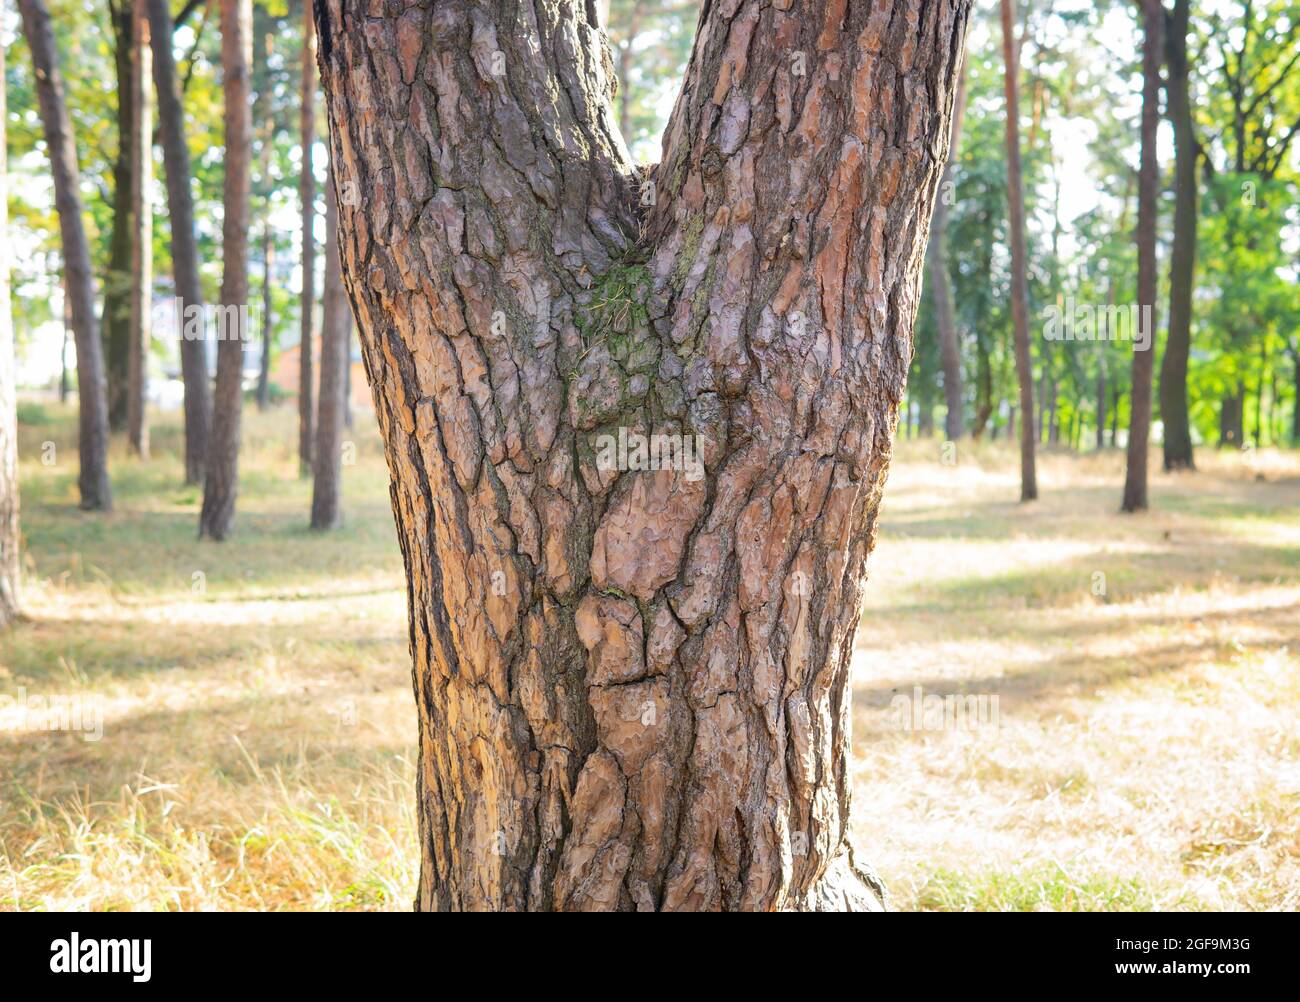 Motif de visage humain sur un tronc d'arbre dans les bois Banque D'Images